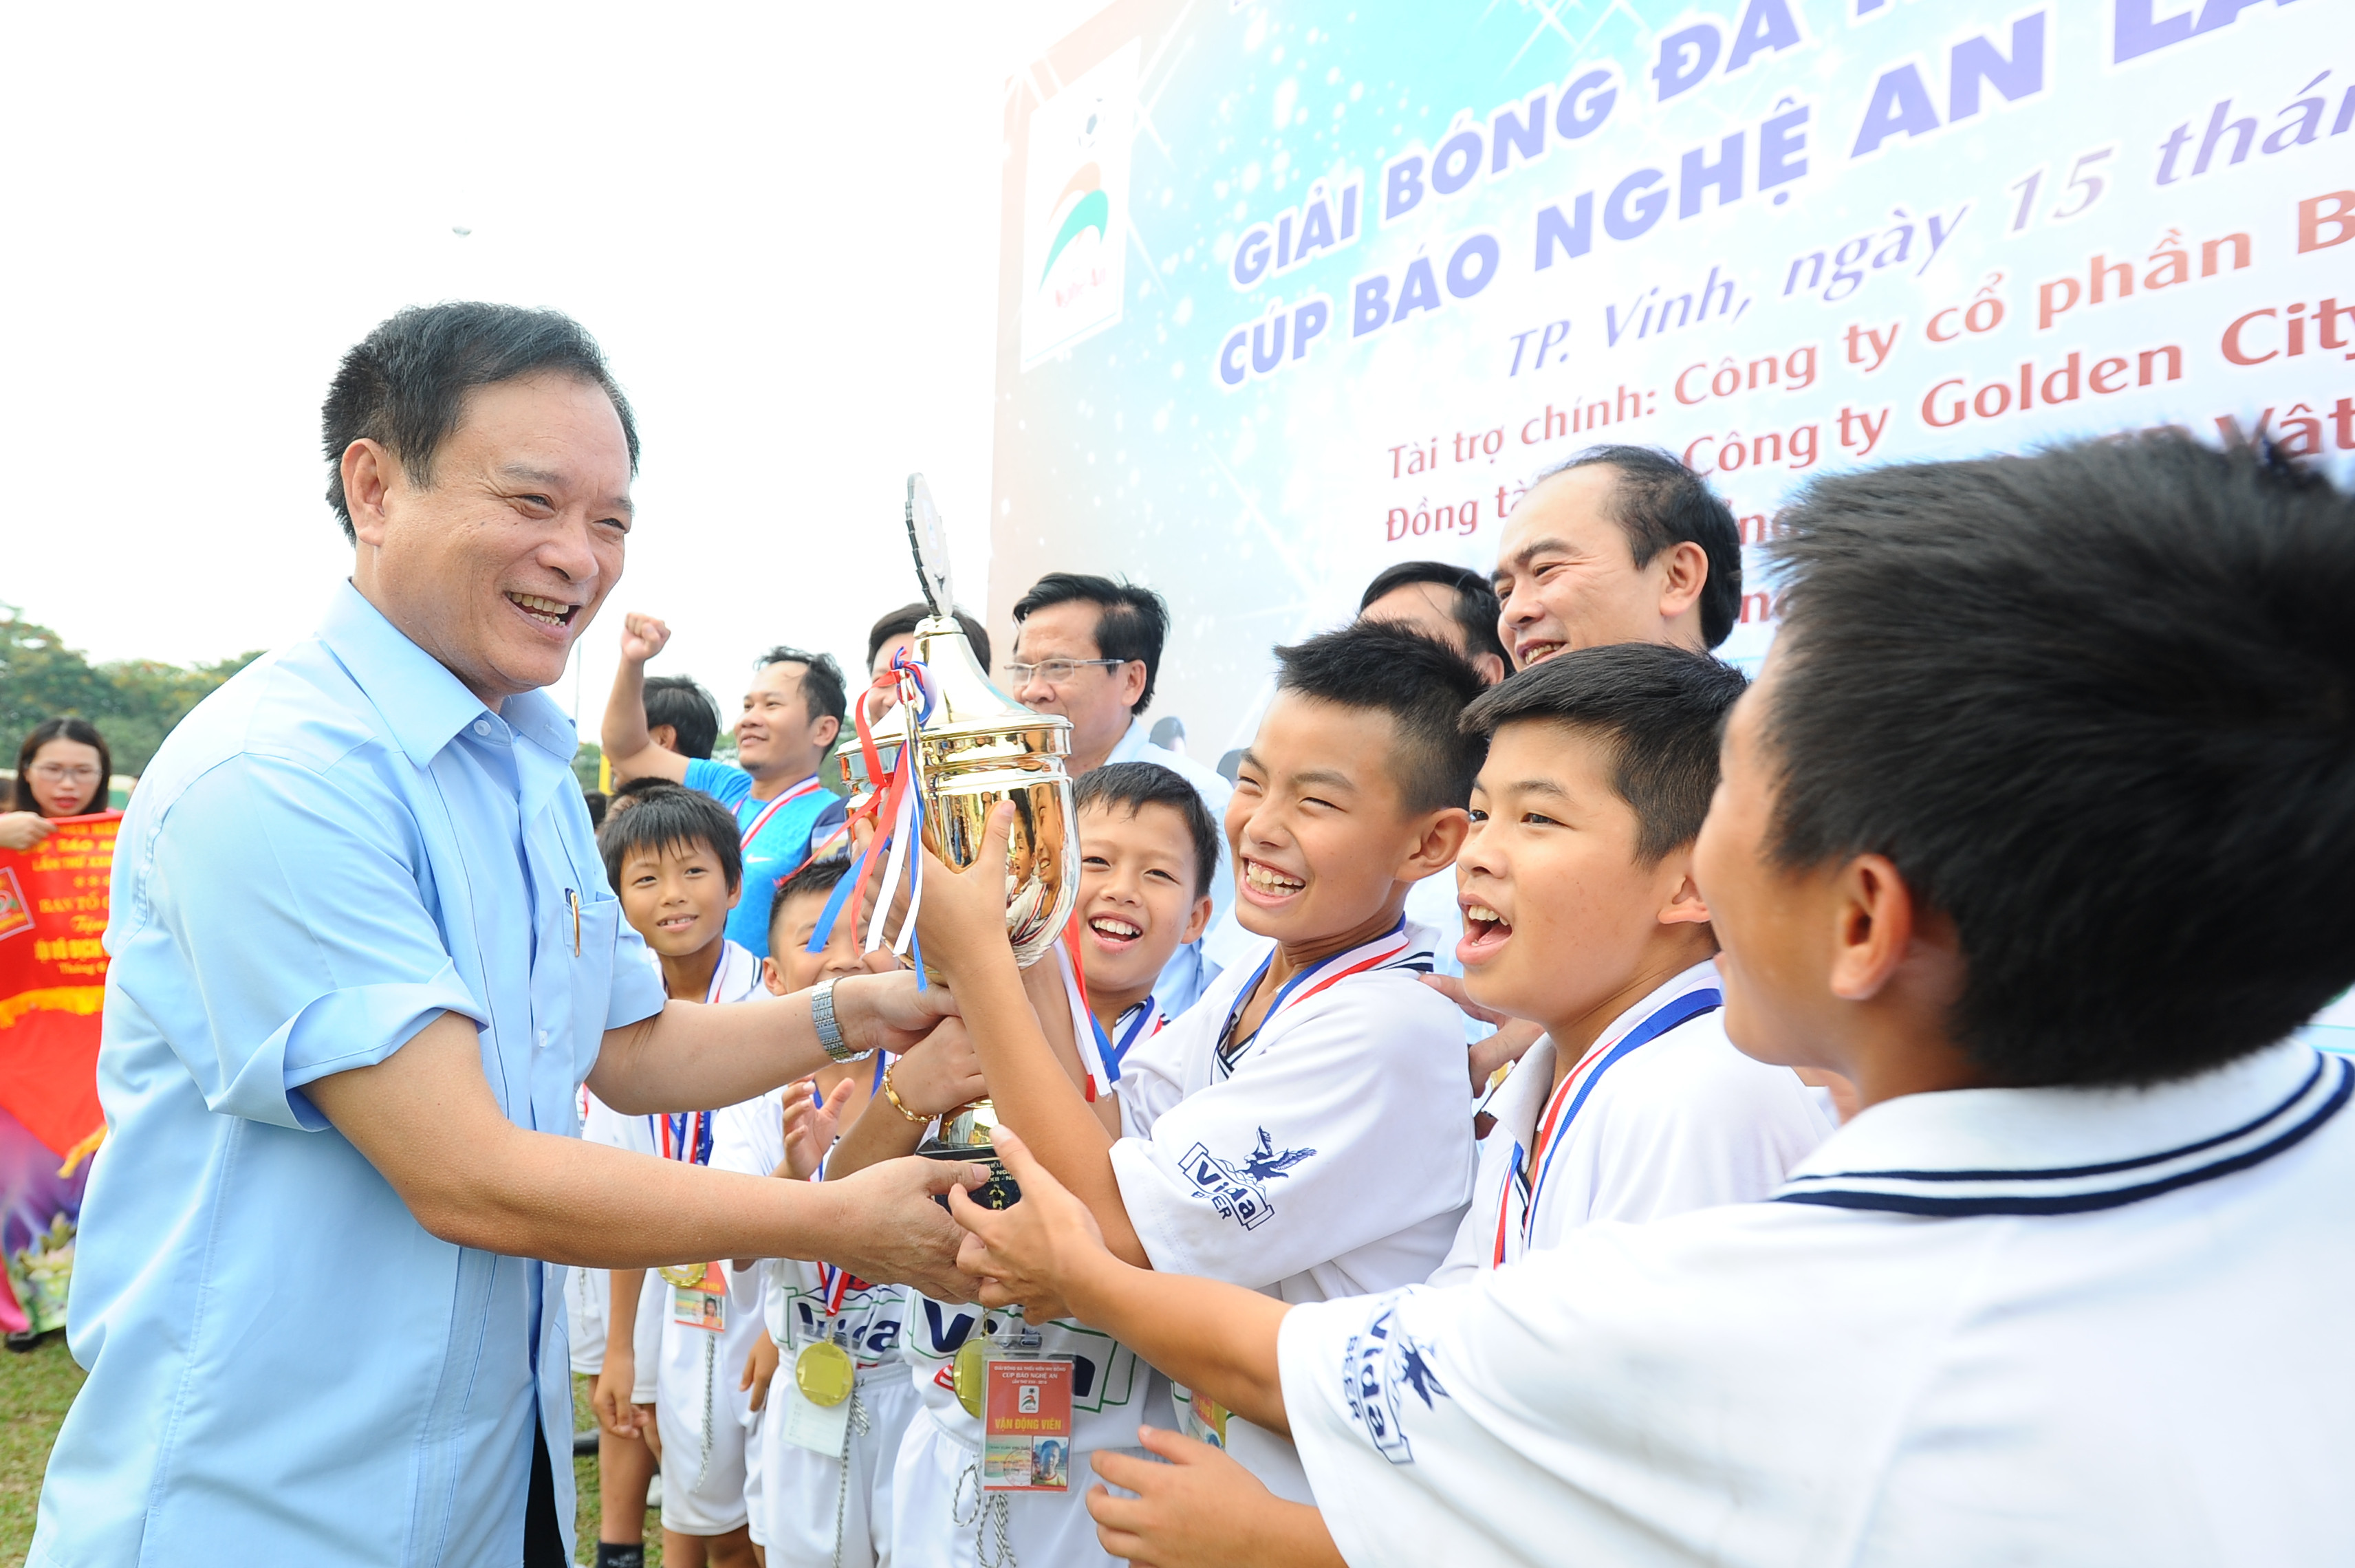 Đồng chí Hồ Phúc Hợp trao cúp vô địch cho đội NĐ Yên Thành. Ảnh: Thành Cường